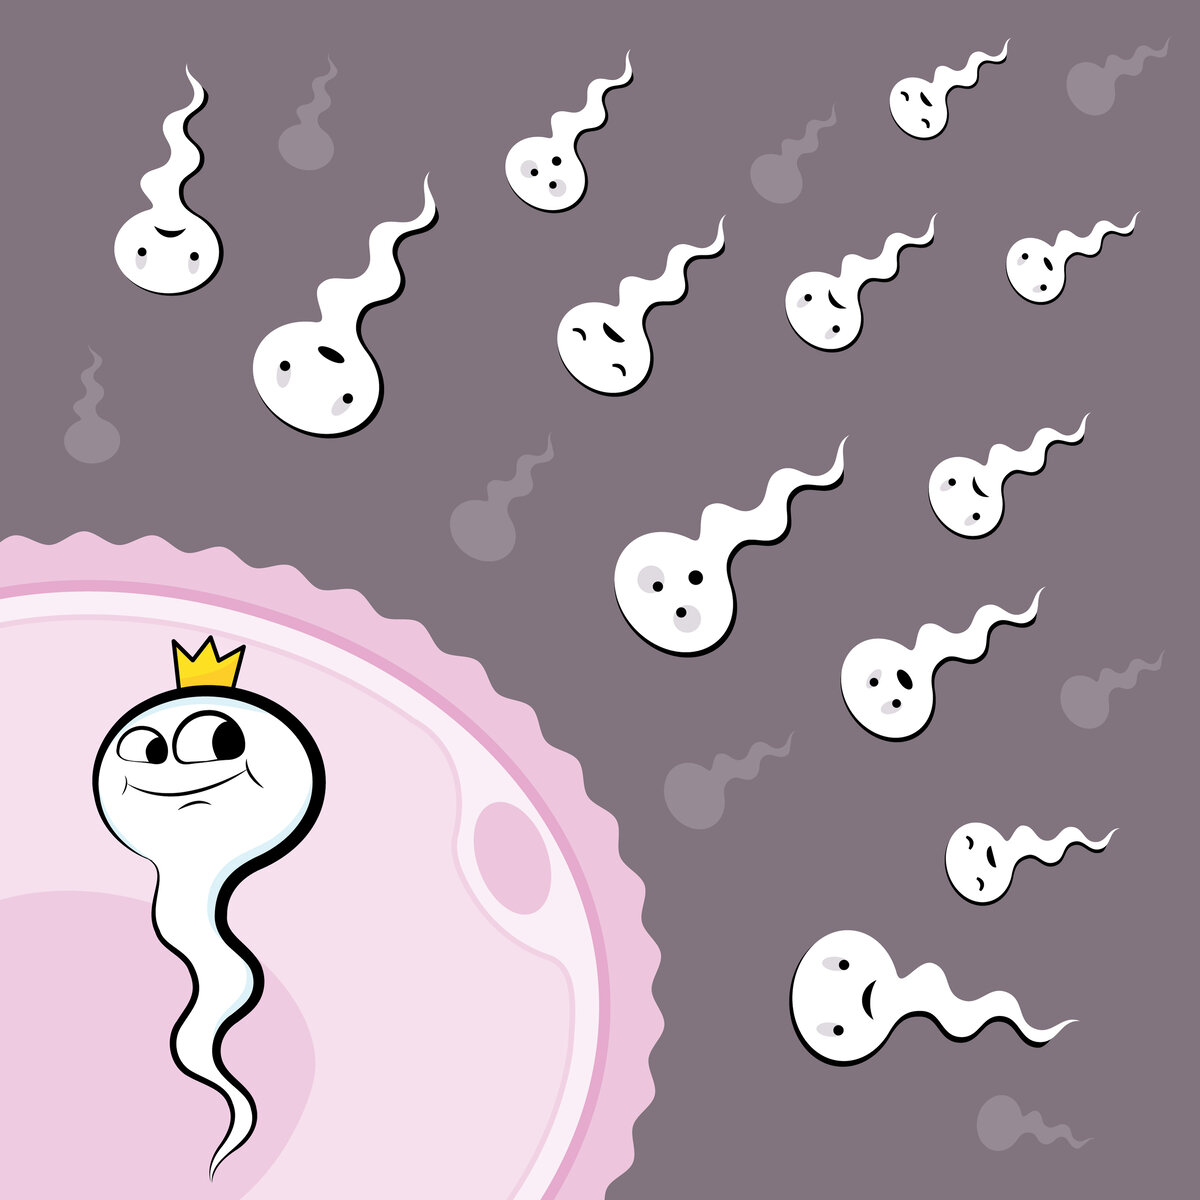 сперма картинка смешные фото 3